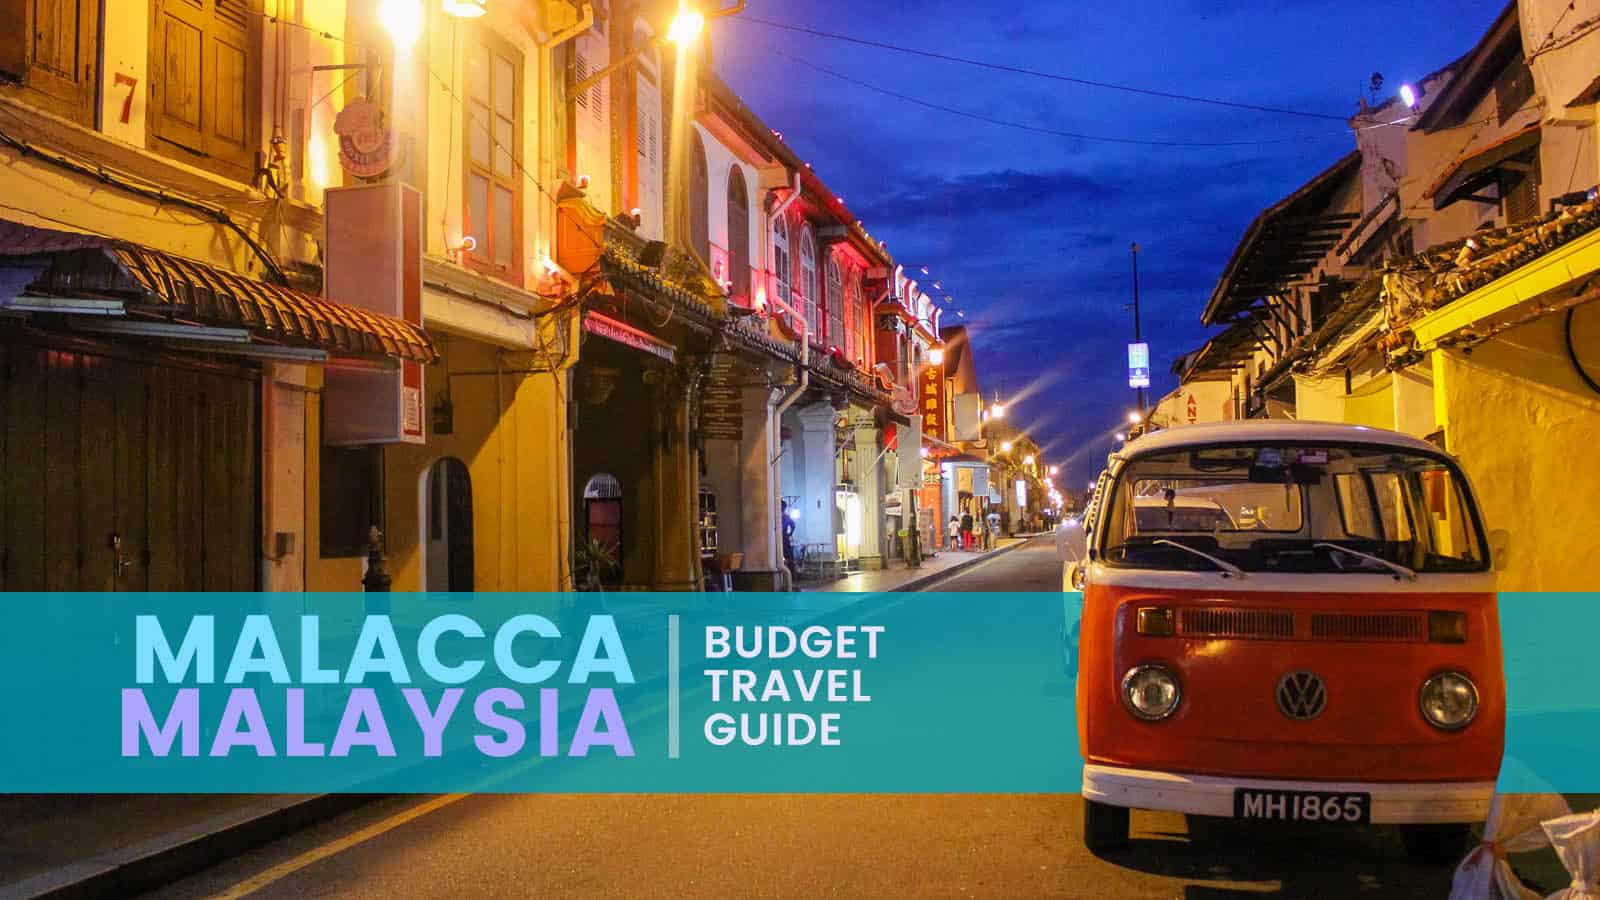 马来西亚马六甲：预算旅行指南